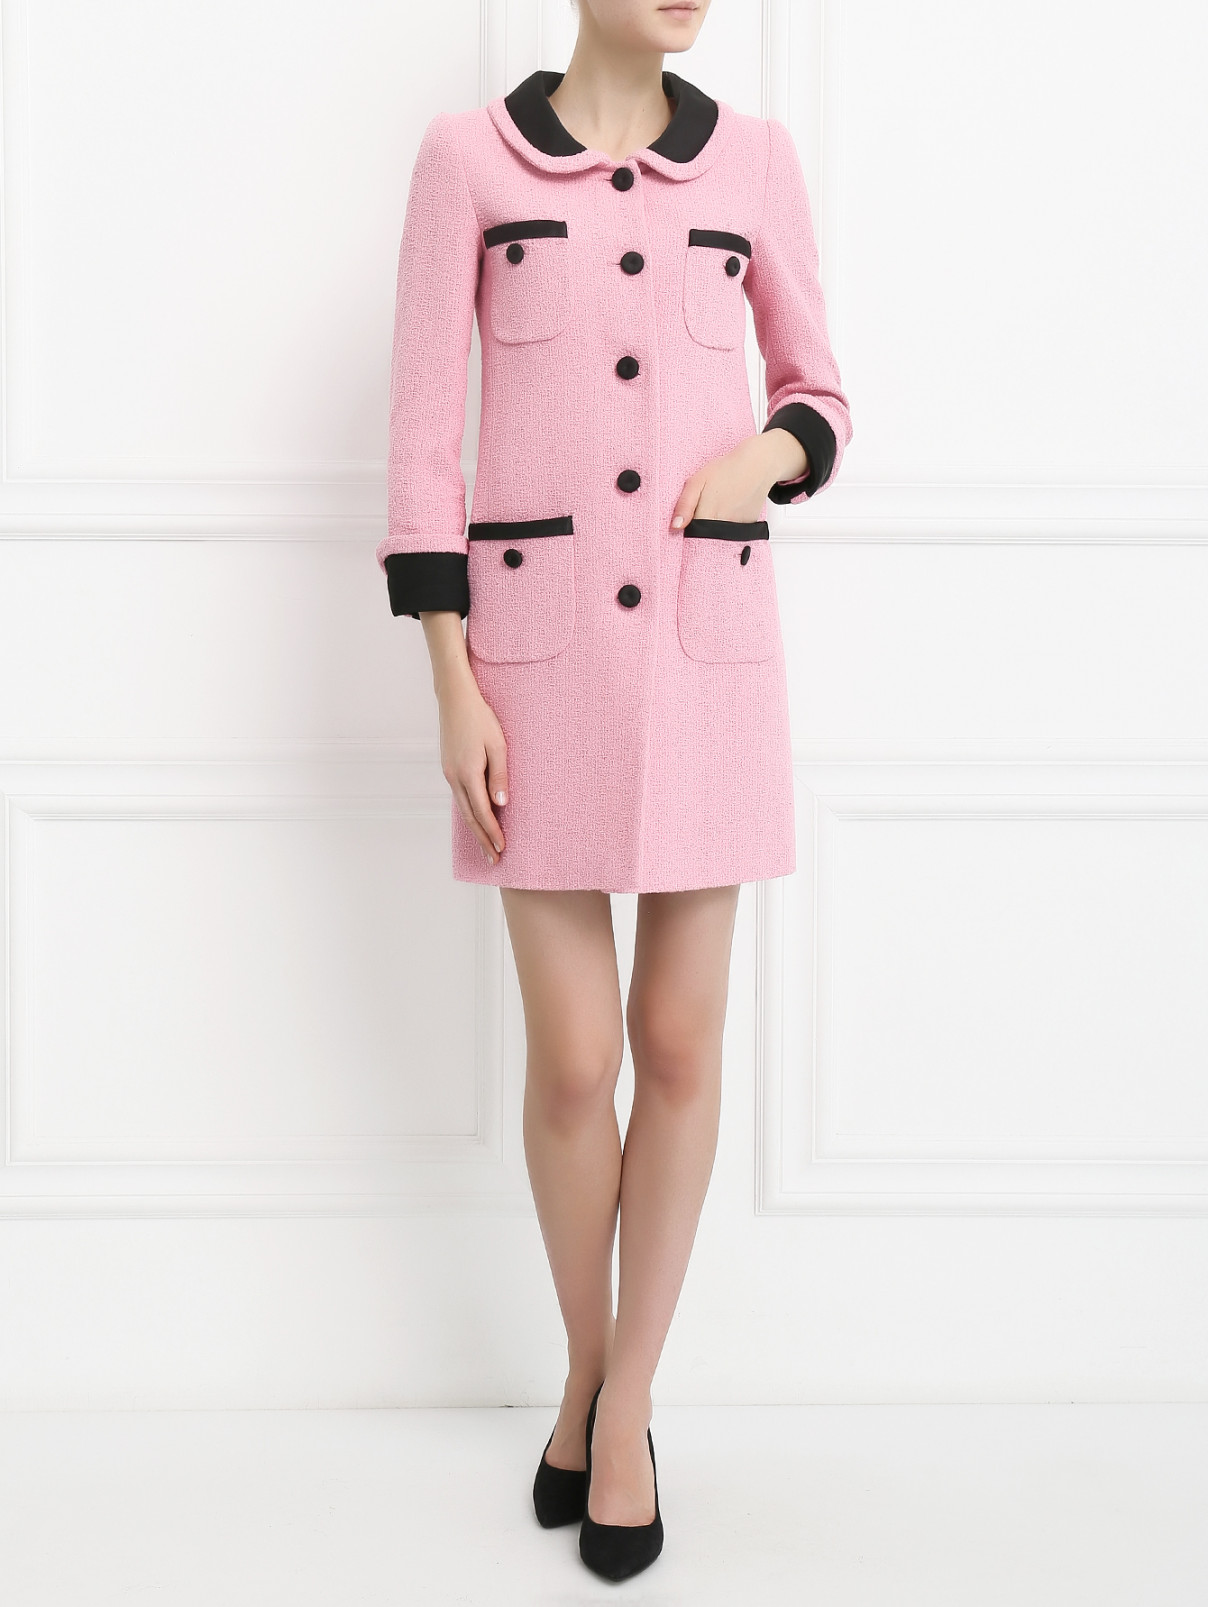 Пальто из хлопка с накладными карманами Moschino Couture  –  Модель Общий вид  – Цвет:  Розовый